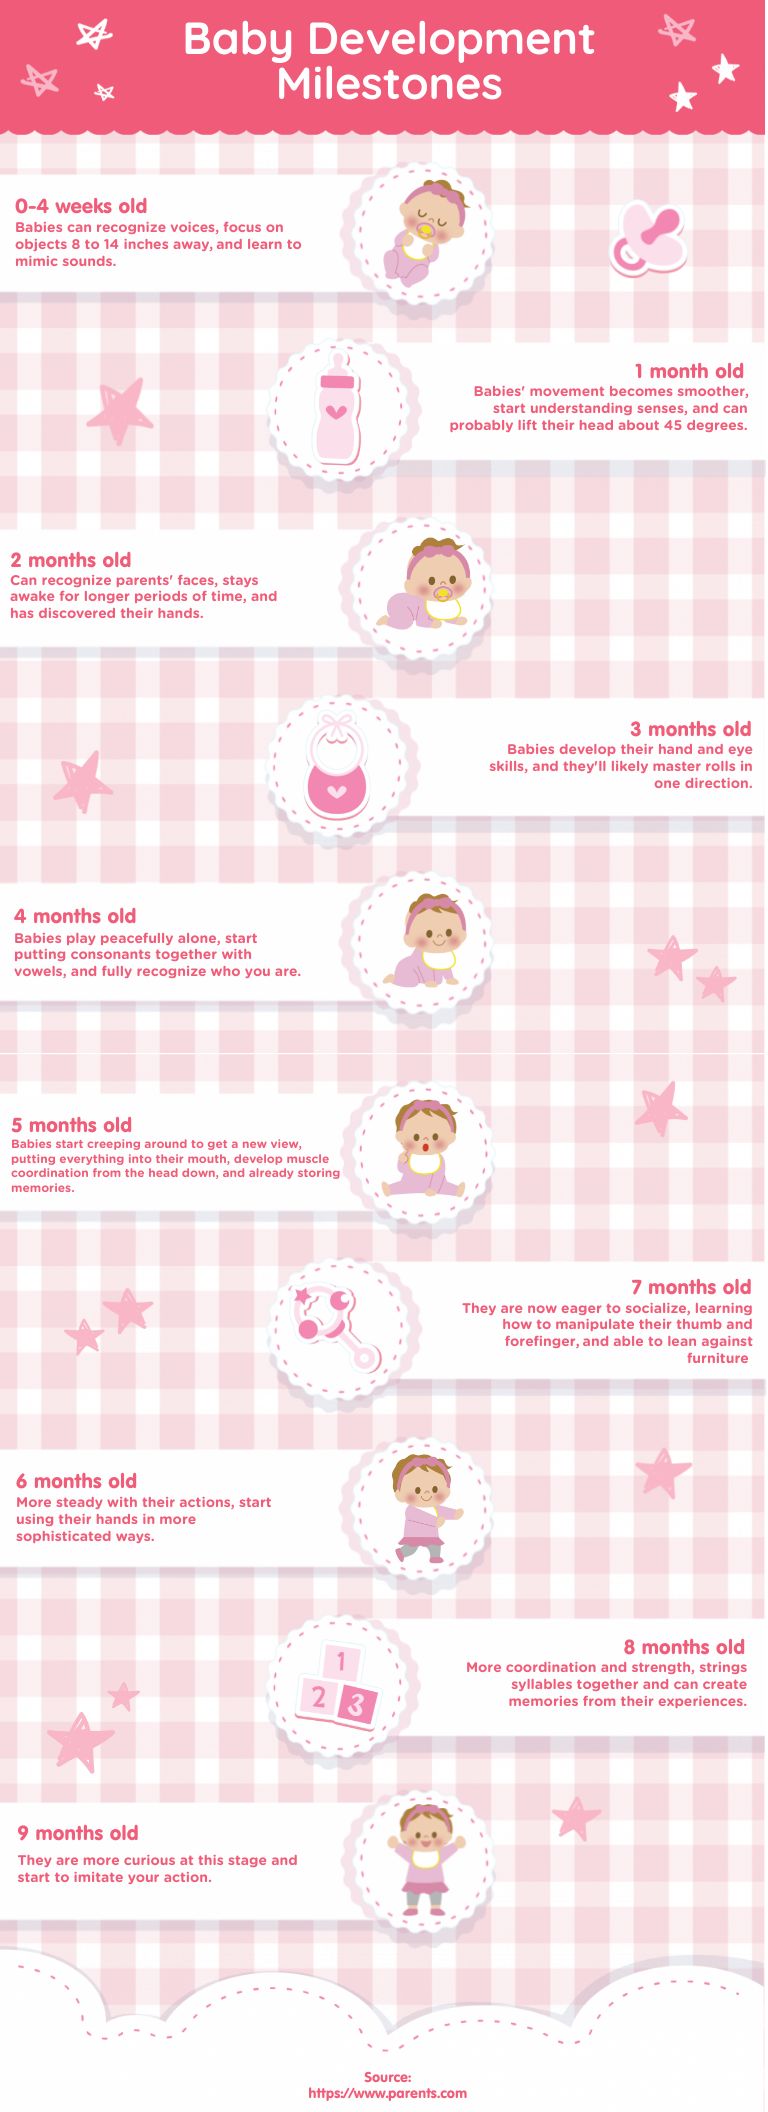 Baby Development Milestone Timeline infographics